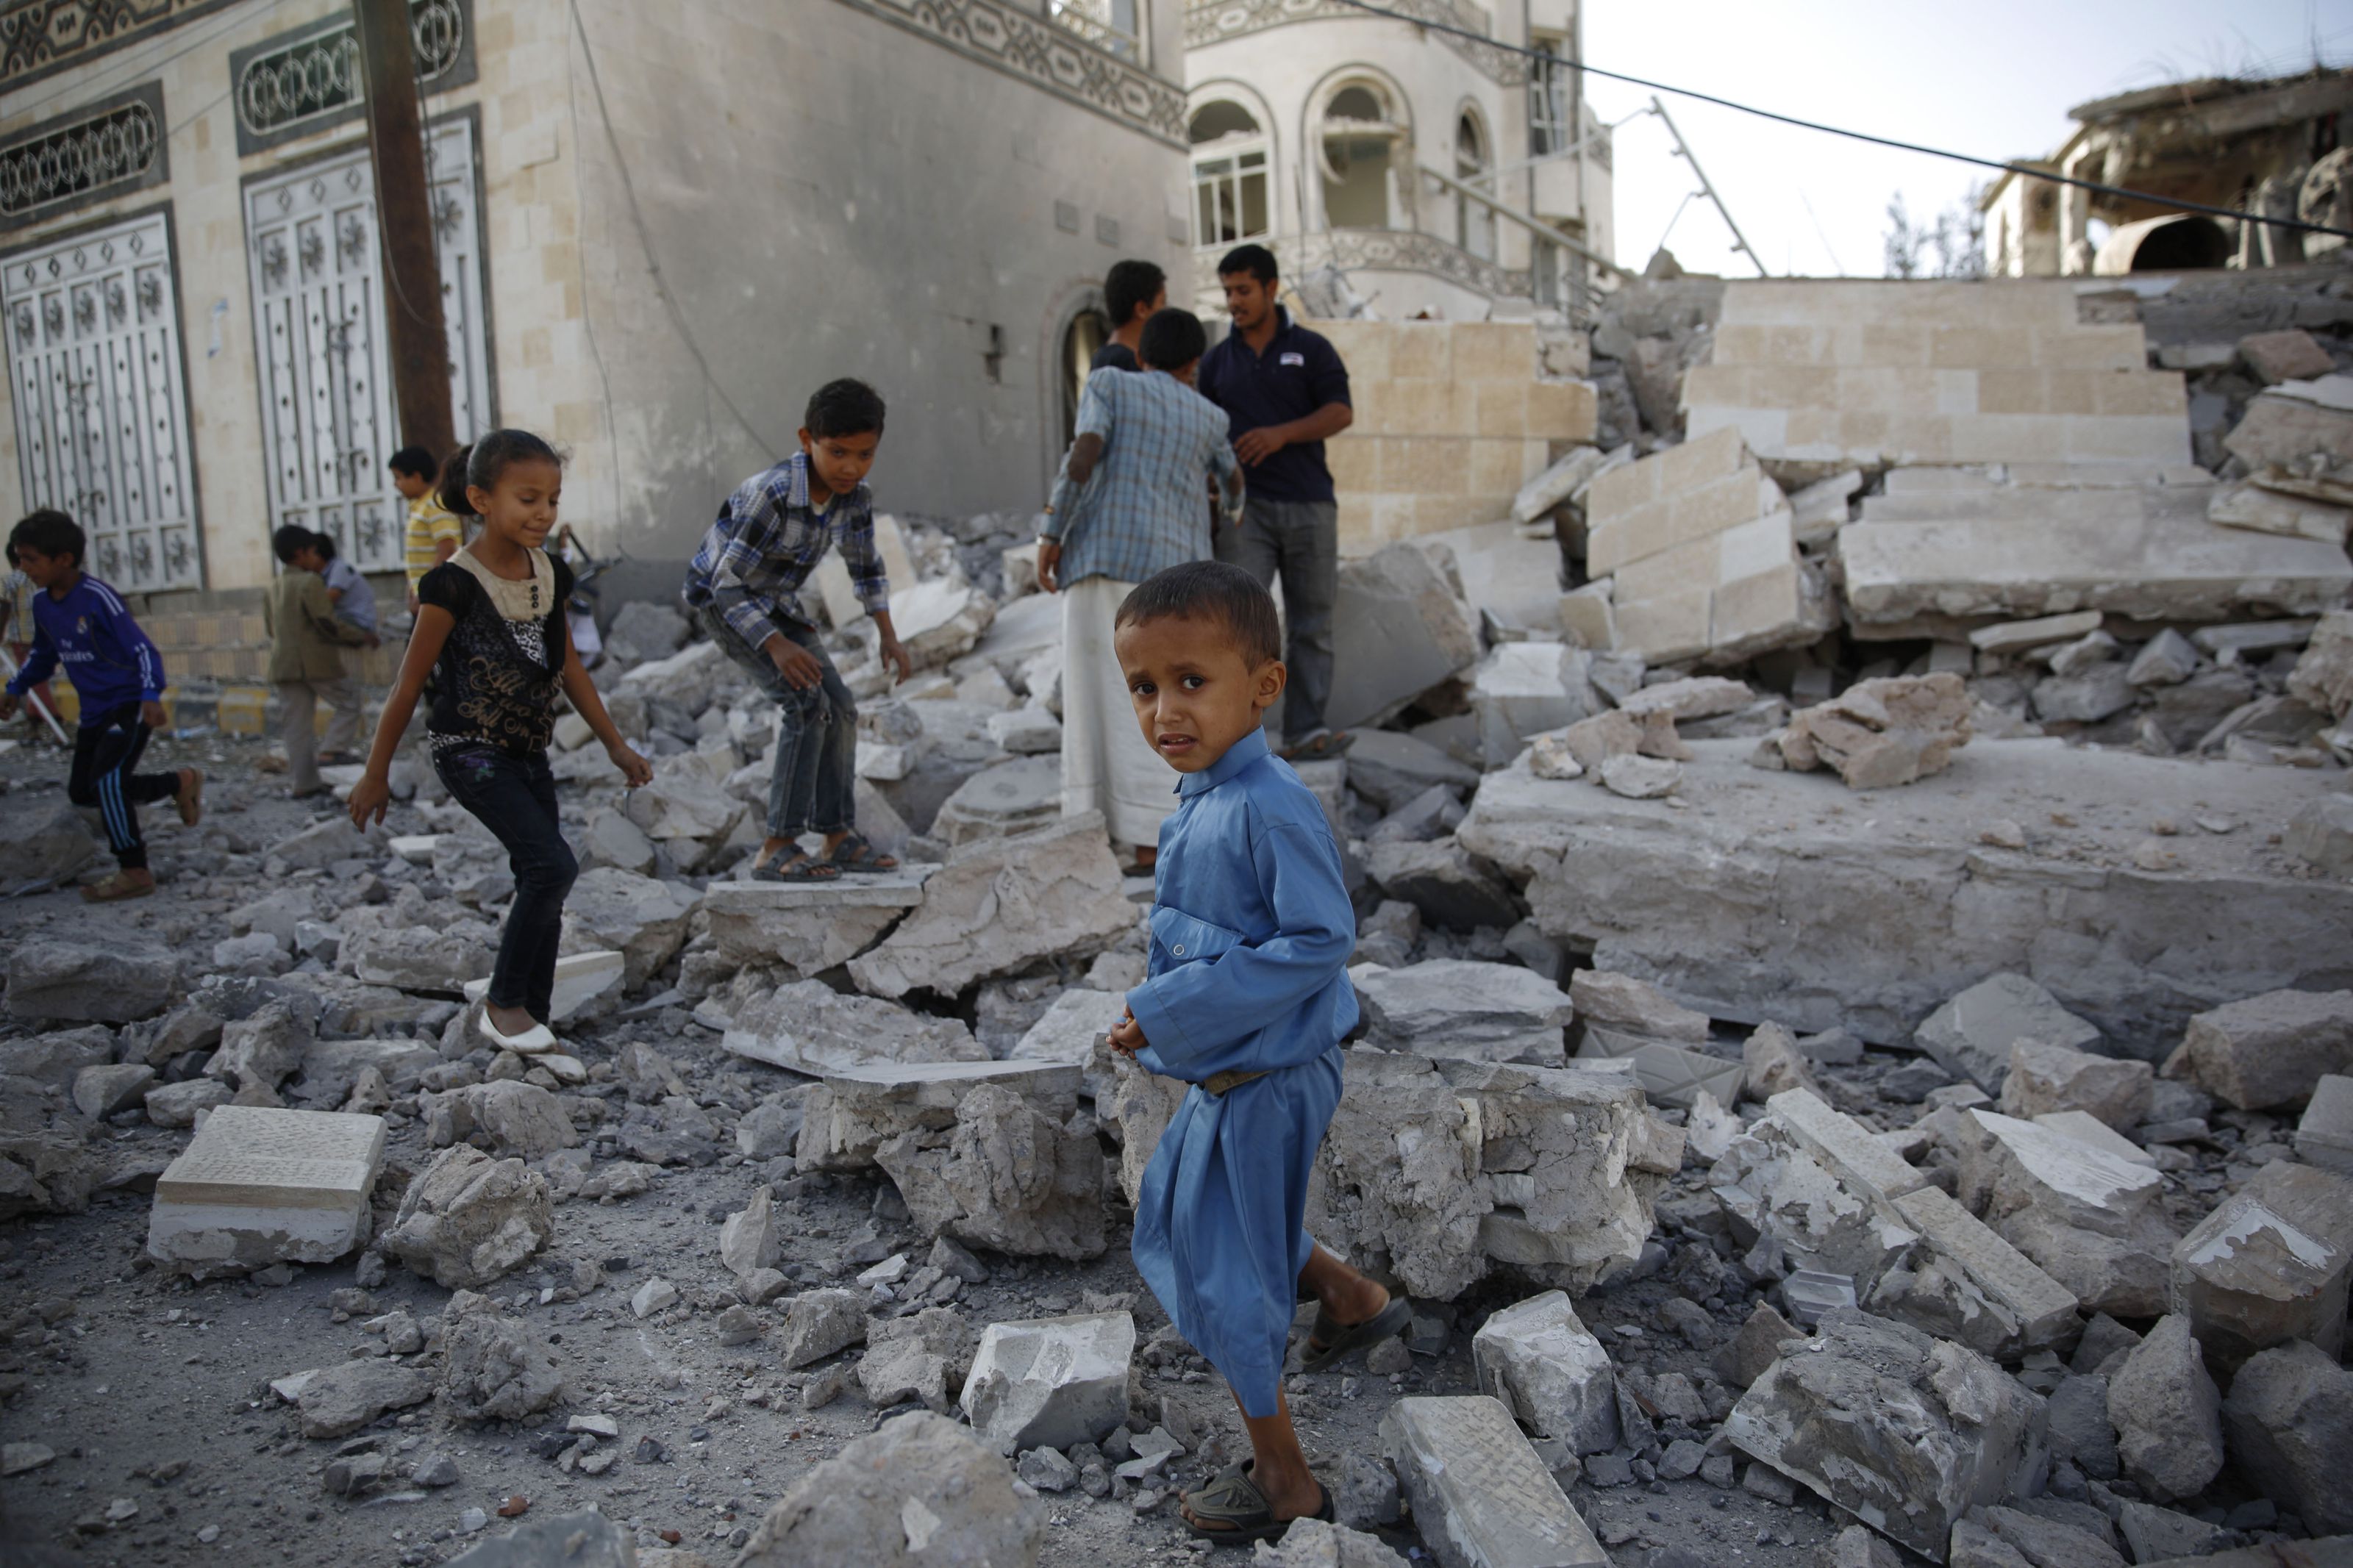 Anak-anak Yaman bermain diatas reruntuhan bangunan bekas peperangan. (Foto: Reuters)